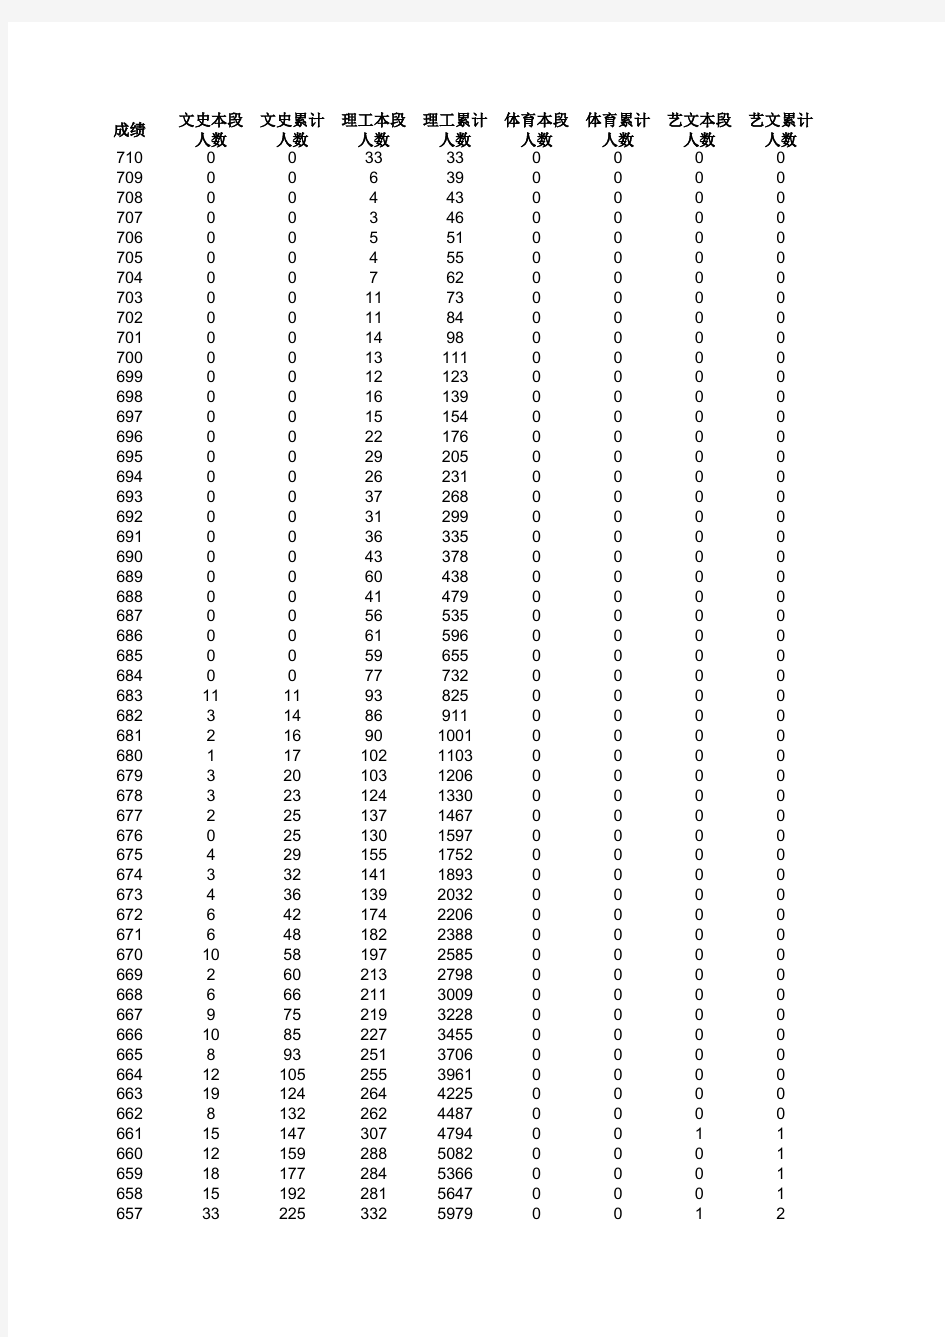 2014年山东高考分数排名全部